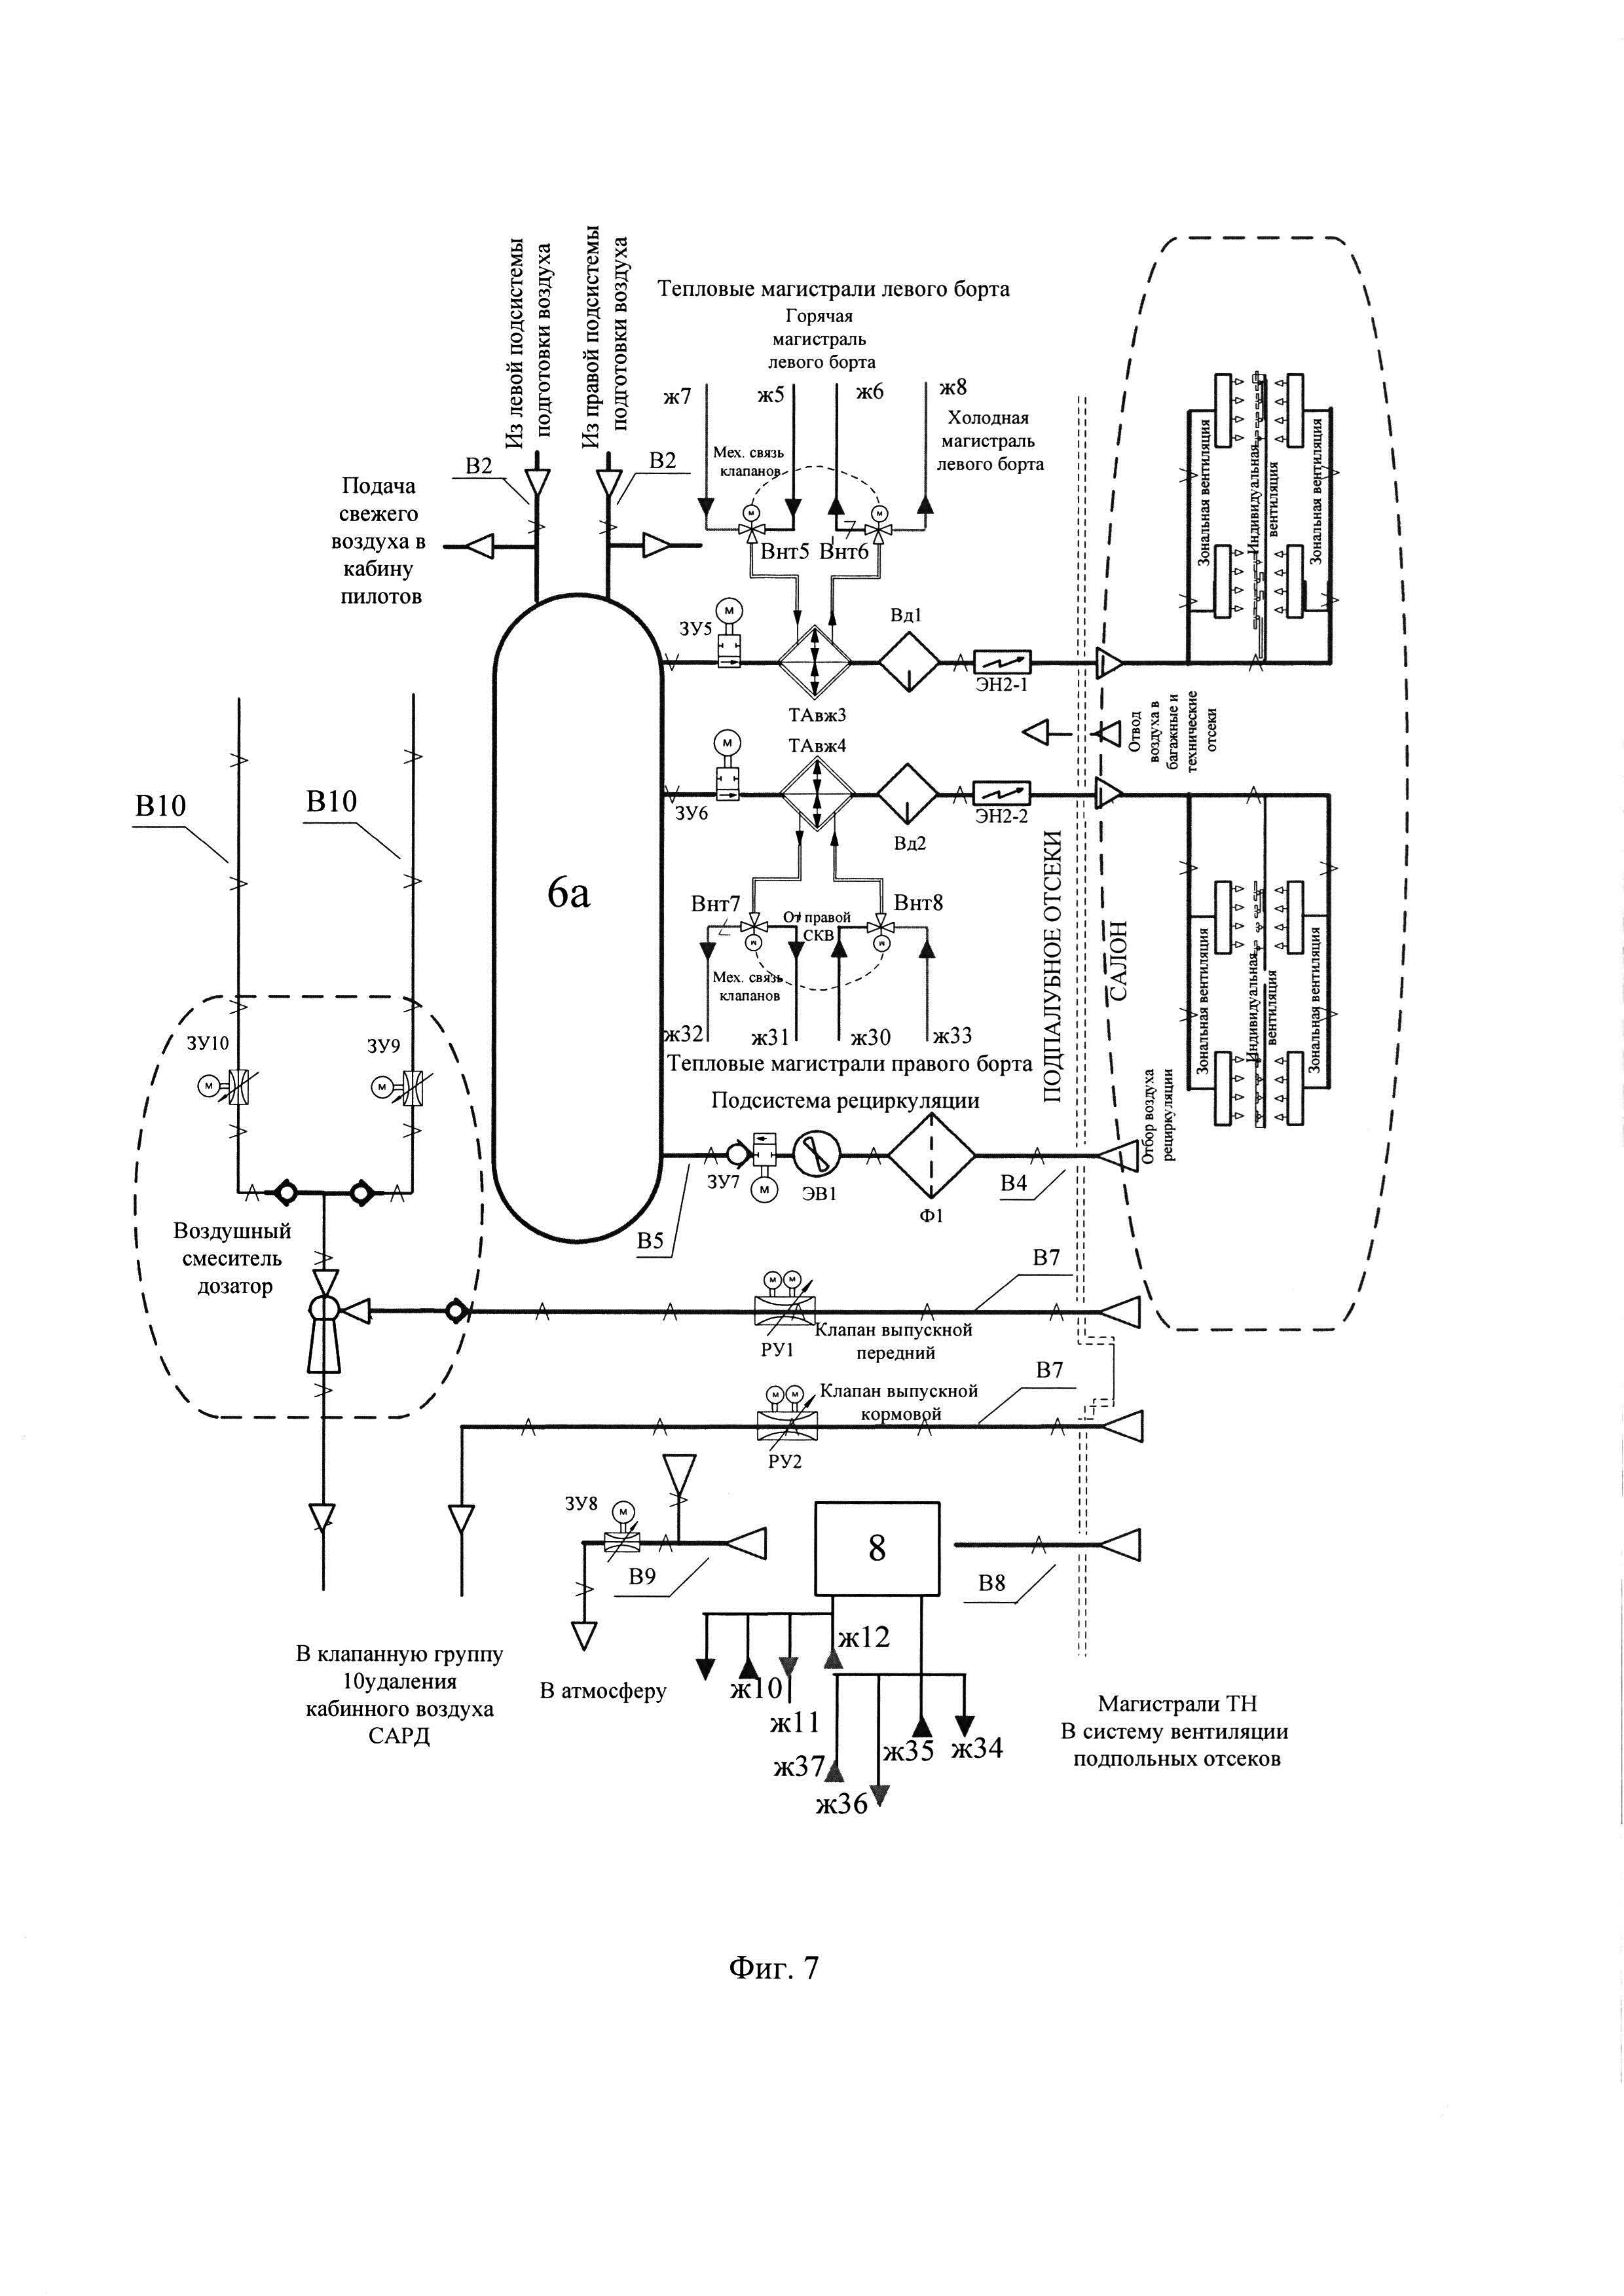 Система кондиционирования воздуха летательного аппарата на основе электроприводных нагнетателей и реверсивных парокомпрессионных холодильных установок